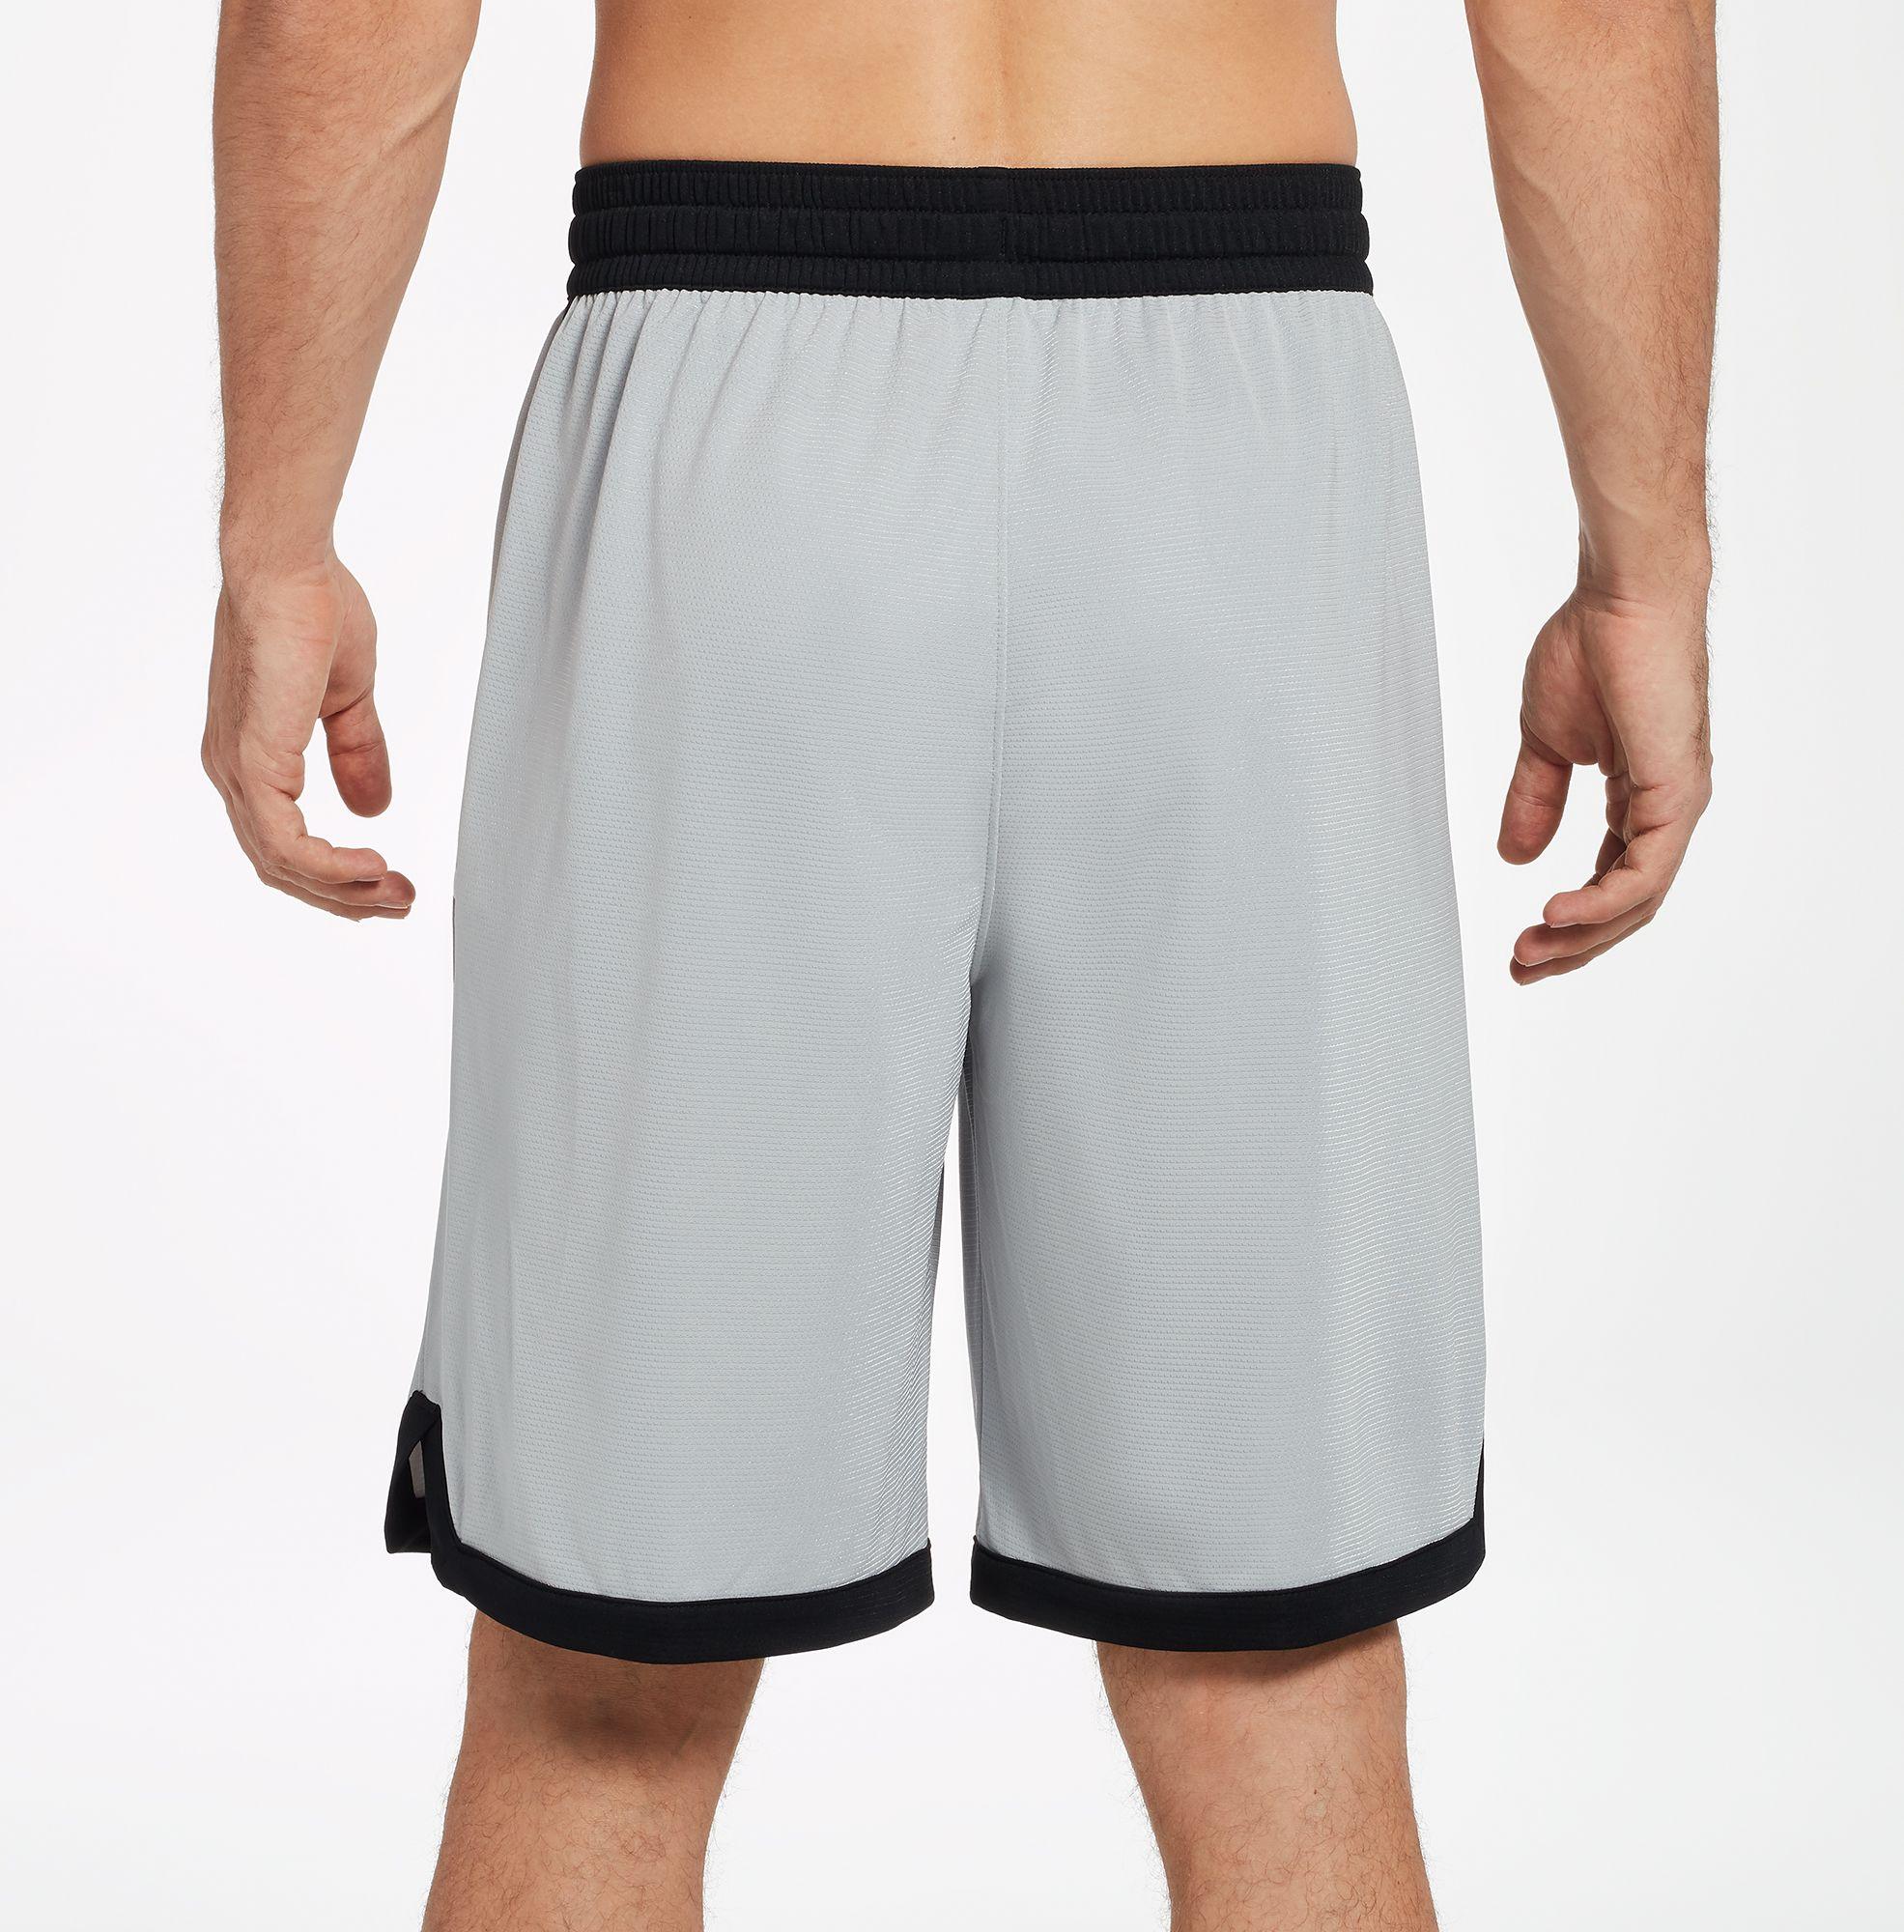 Nike Dry Elite Stripe Basketball Shorts in Gray for Men - Lyst